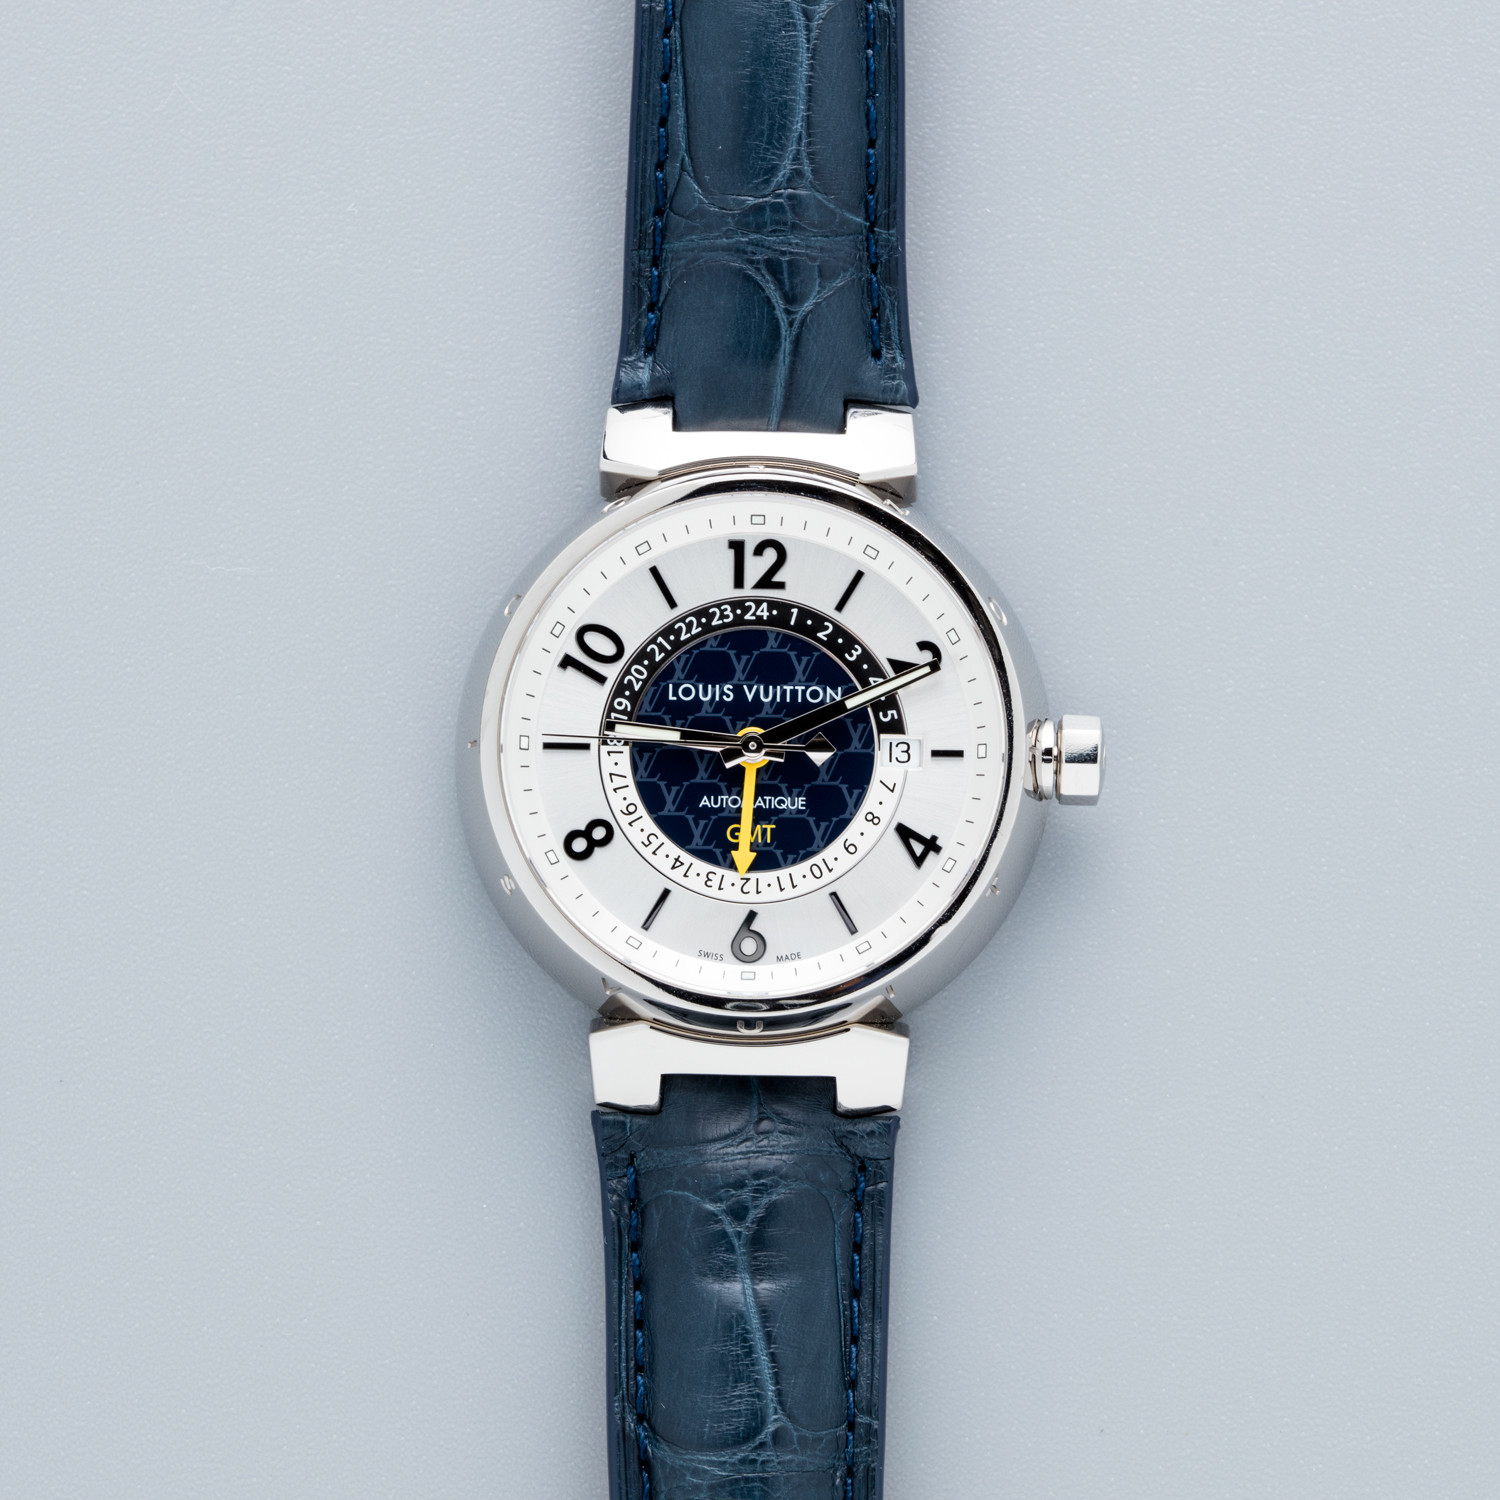 Watch Louis Vuitton Tambour Essentiel Grey - GMT Date